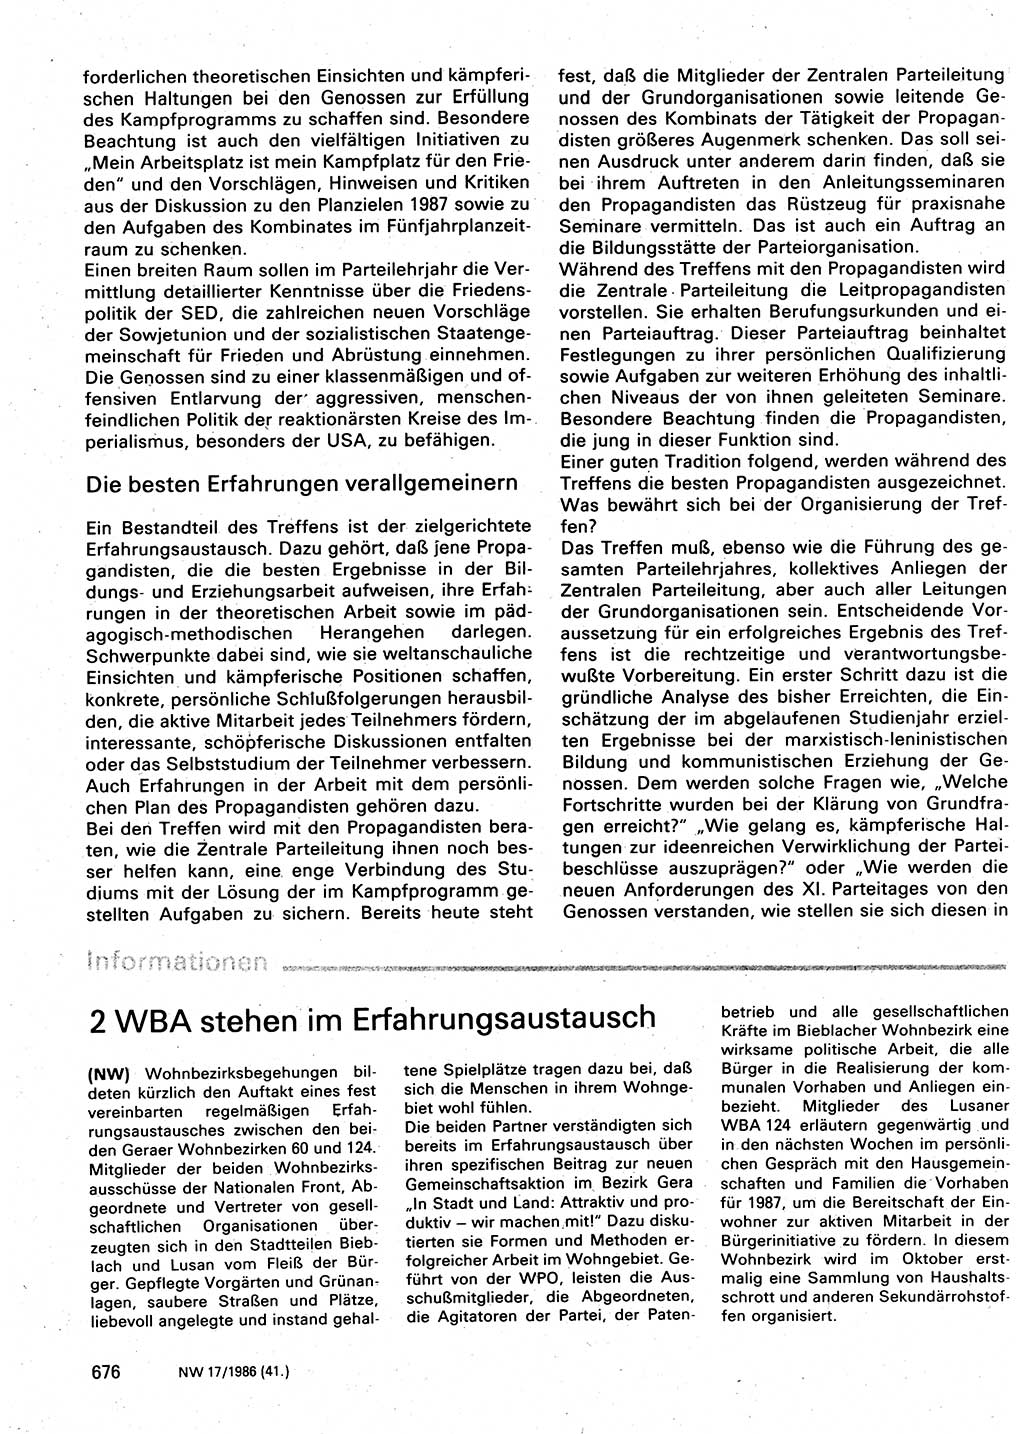 Neuer Weg (NW), Organ des Zentralkomitees (ZK) der SED (Sozialistische Einheitspartei Deutschlands) für Fragen des Parteilebens, 41. Jahrgang [Deutsche Demokratische Republik (DDR)] 1986, Seite 676 (NW ZK SED DDR 1986, S. 676)